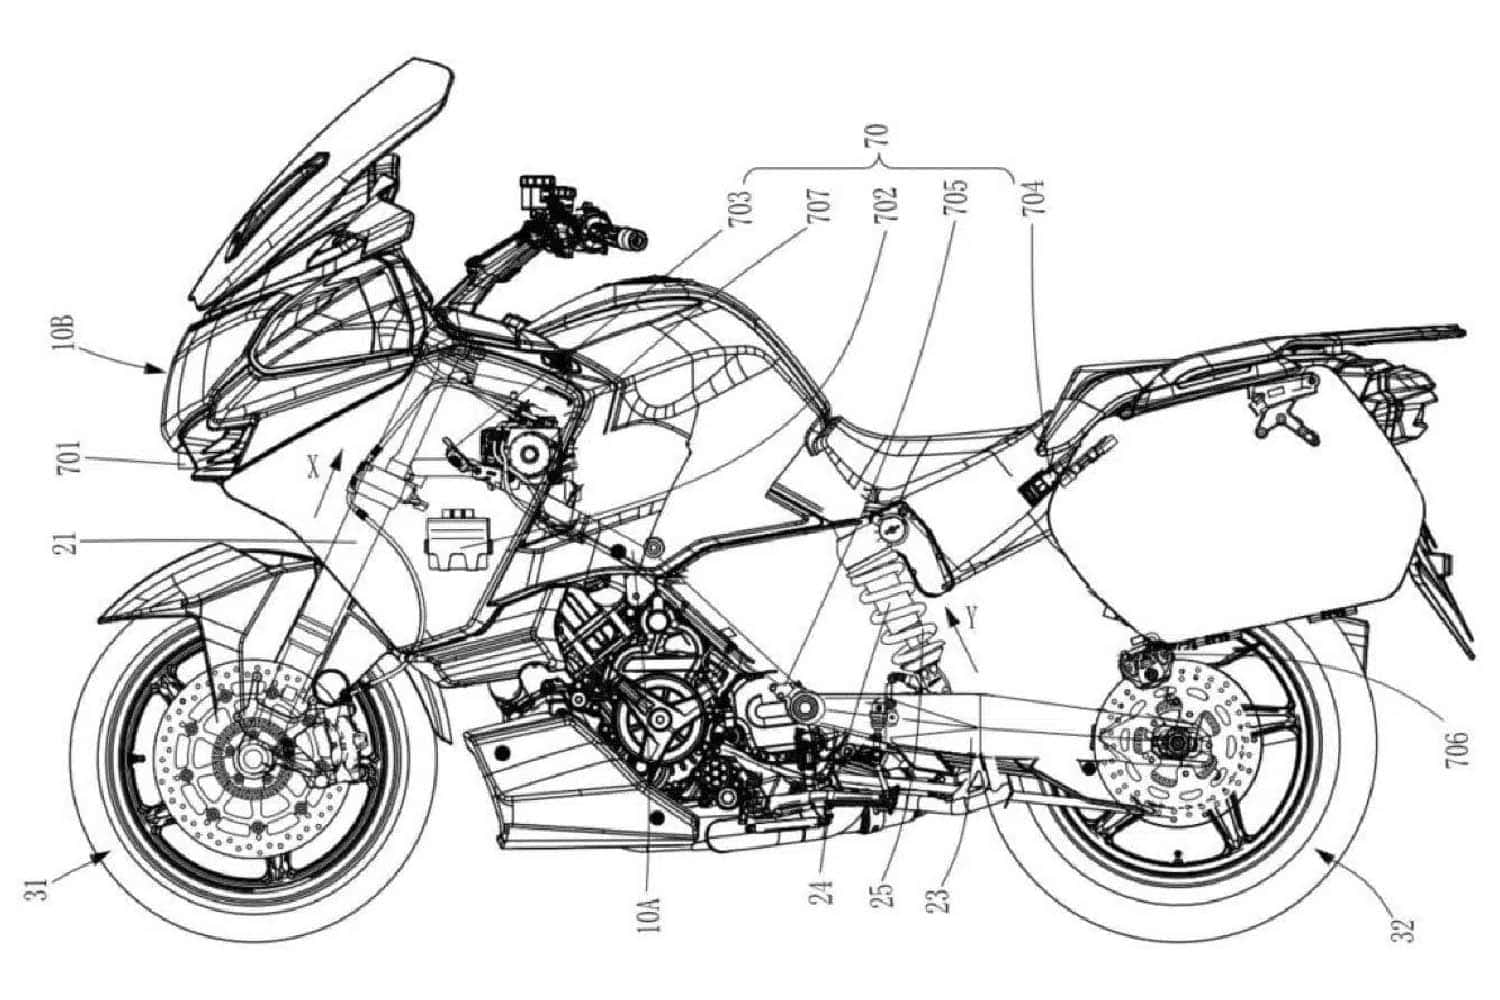 La suspensión activa de CFMoto podría cambiar el mundo de la moto